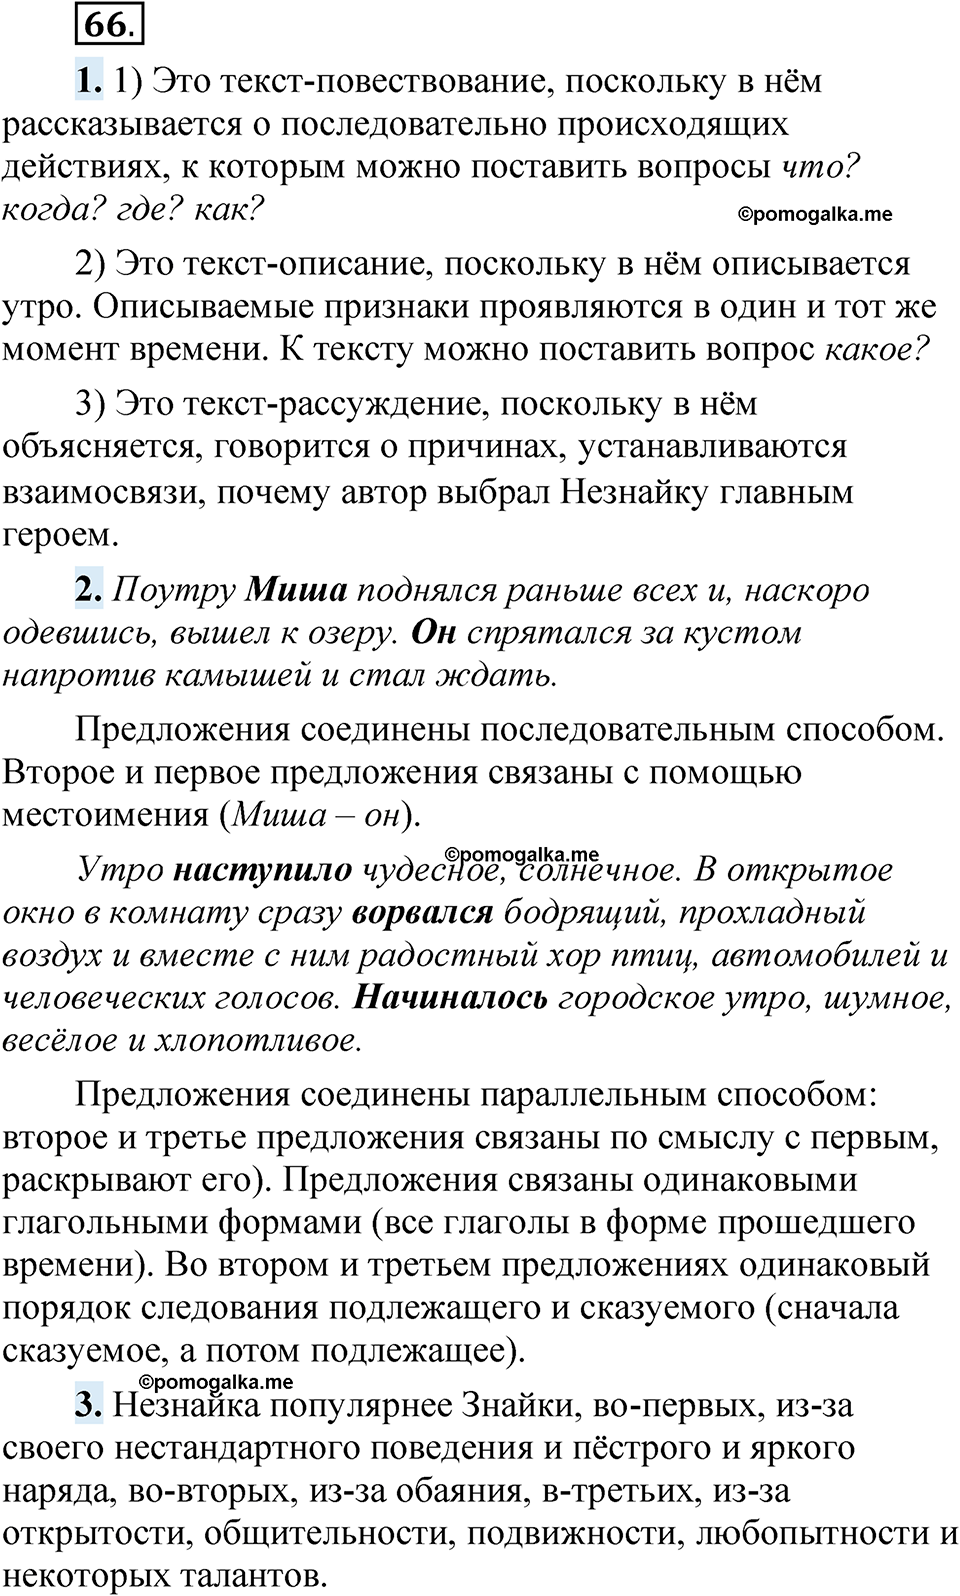 страница 52 упражнение 66 русский язык 5 класс Быстрова, Кибирева 1 часть 2021 год